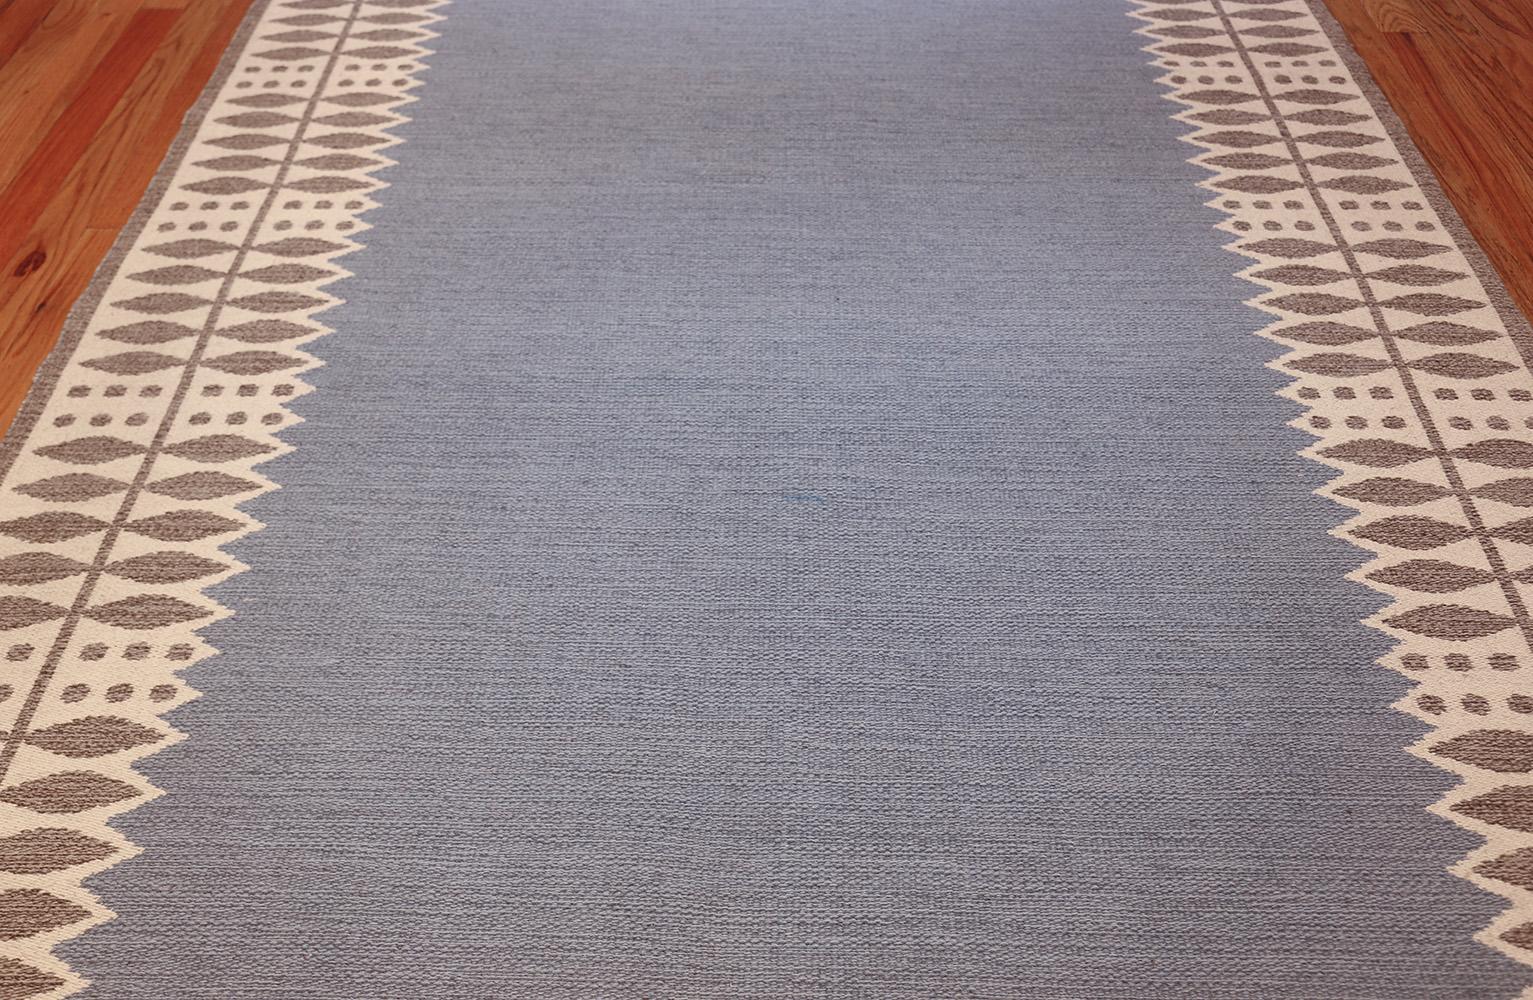 Magnifique tapis Kilim scandinave vintage double face, pays d'origine / type de tapis : Tapis de Scandinavie, date : circa mid-20th century. Taille : 6 ft 4 in x 9 ft 7 in (1.93 m x 2.92 m). 

Ce tapis scandinave vintage du milieu du siècle, rare et